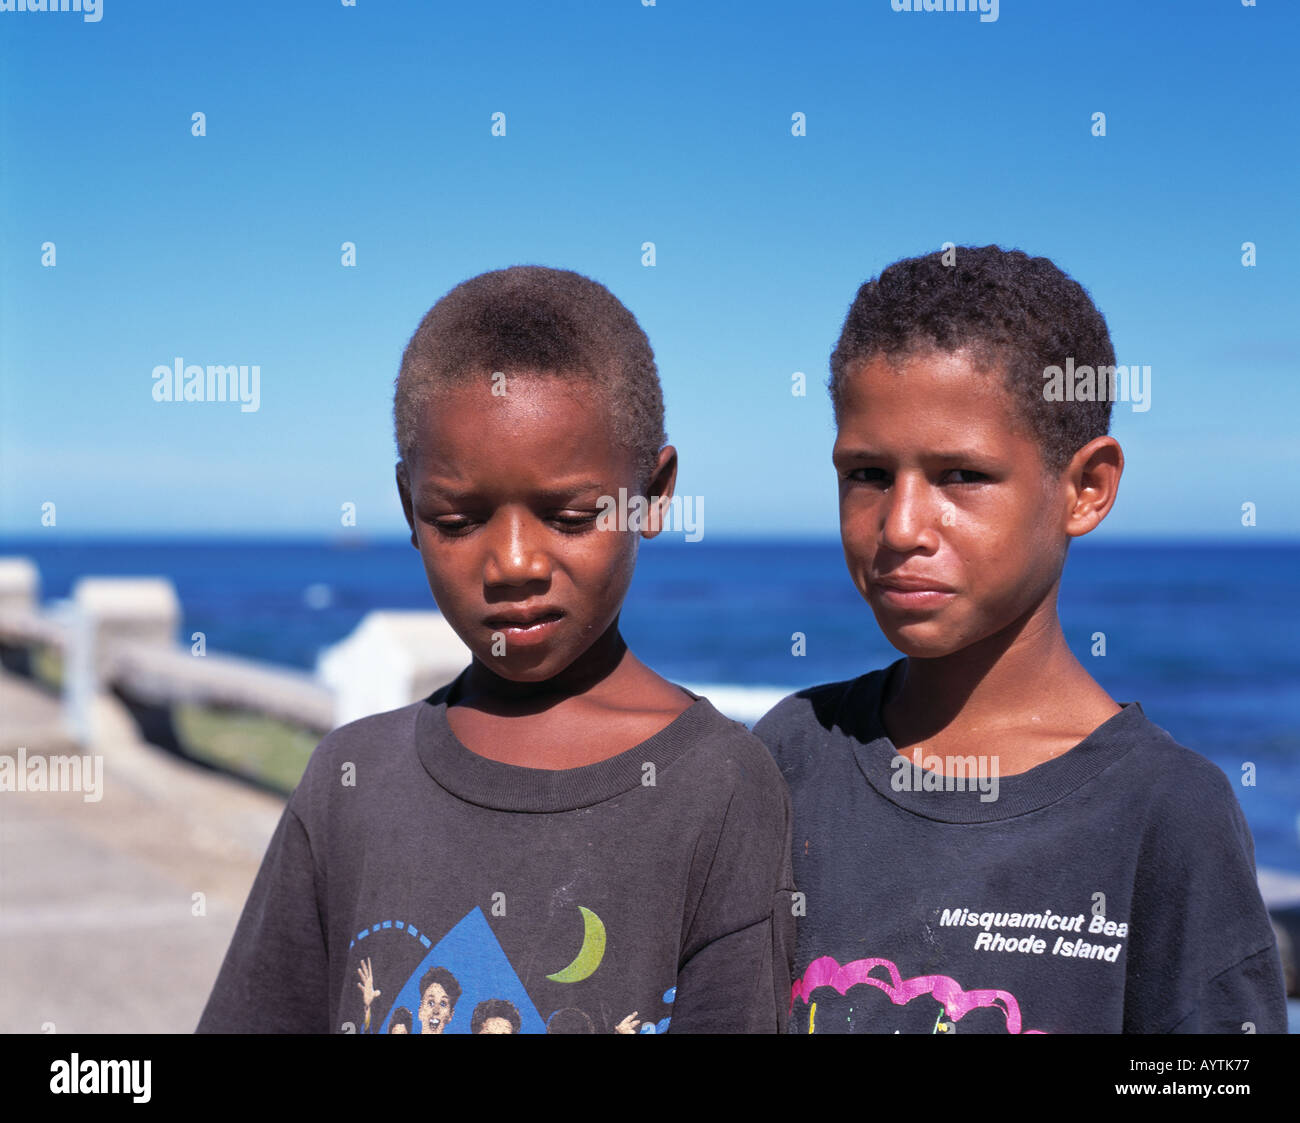 Deux garçons en t-shirts, des jeunes, des sang-mêlé, mulâtres, portrait, République dominicaine, mer des Caraïbes Banque D'Images